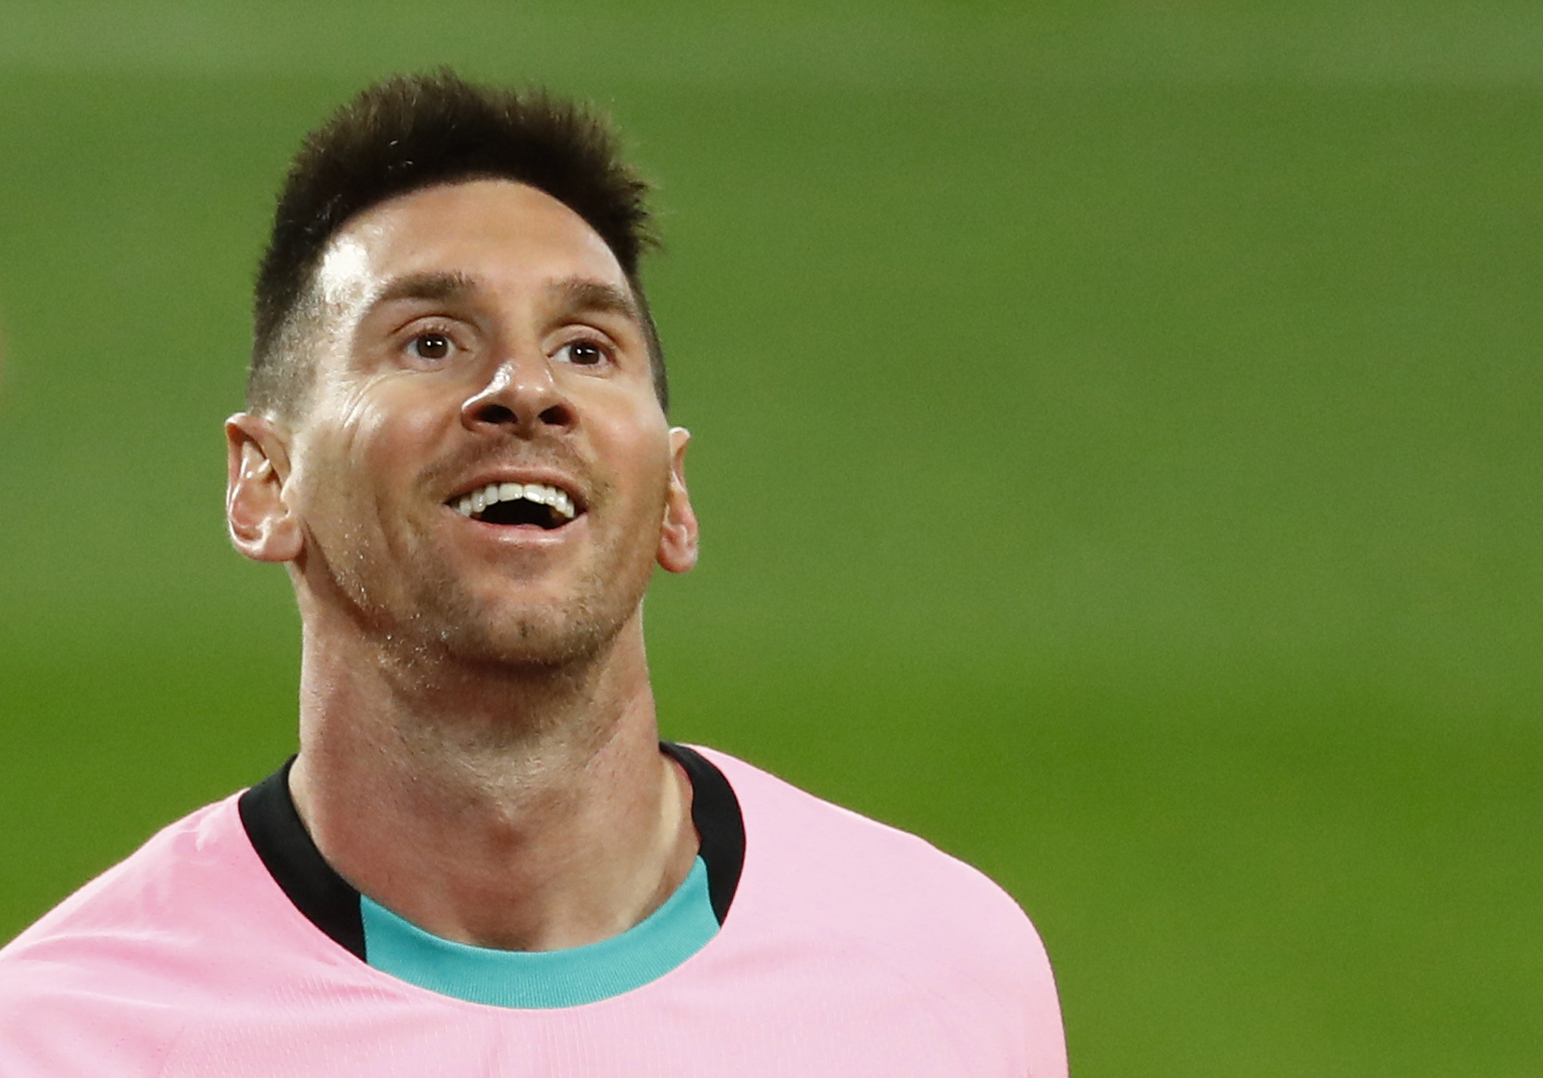 Leo Messi lidera las estadísticas de LaLiga a las puertas del clásico contra el Real Madrid